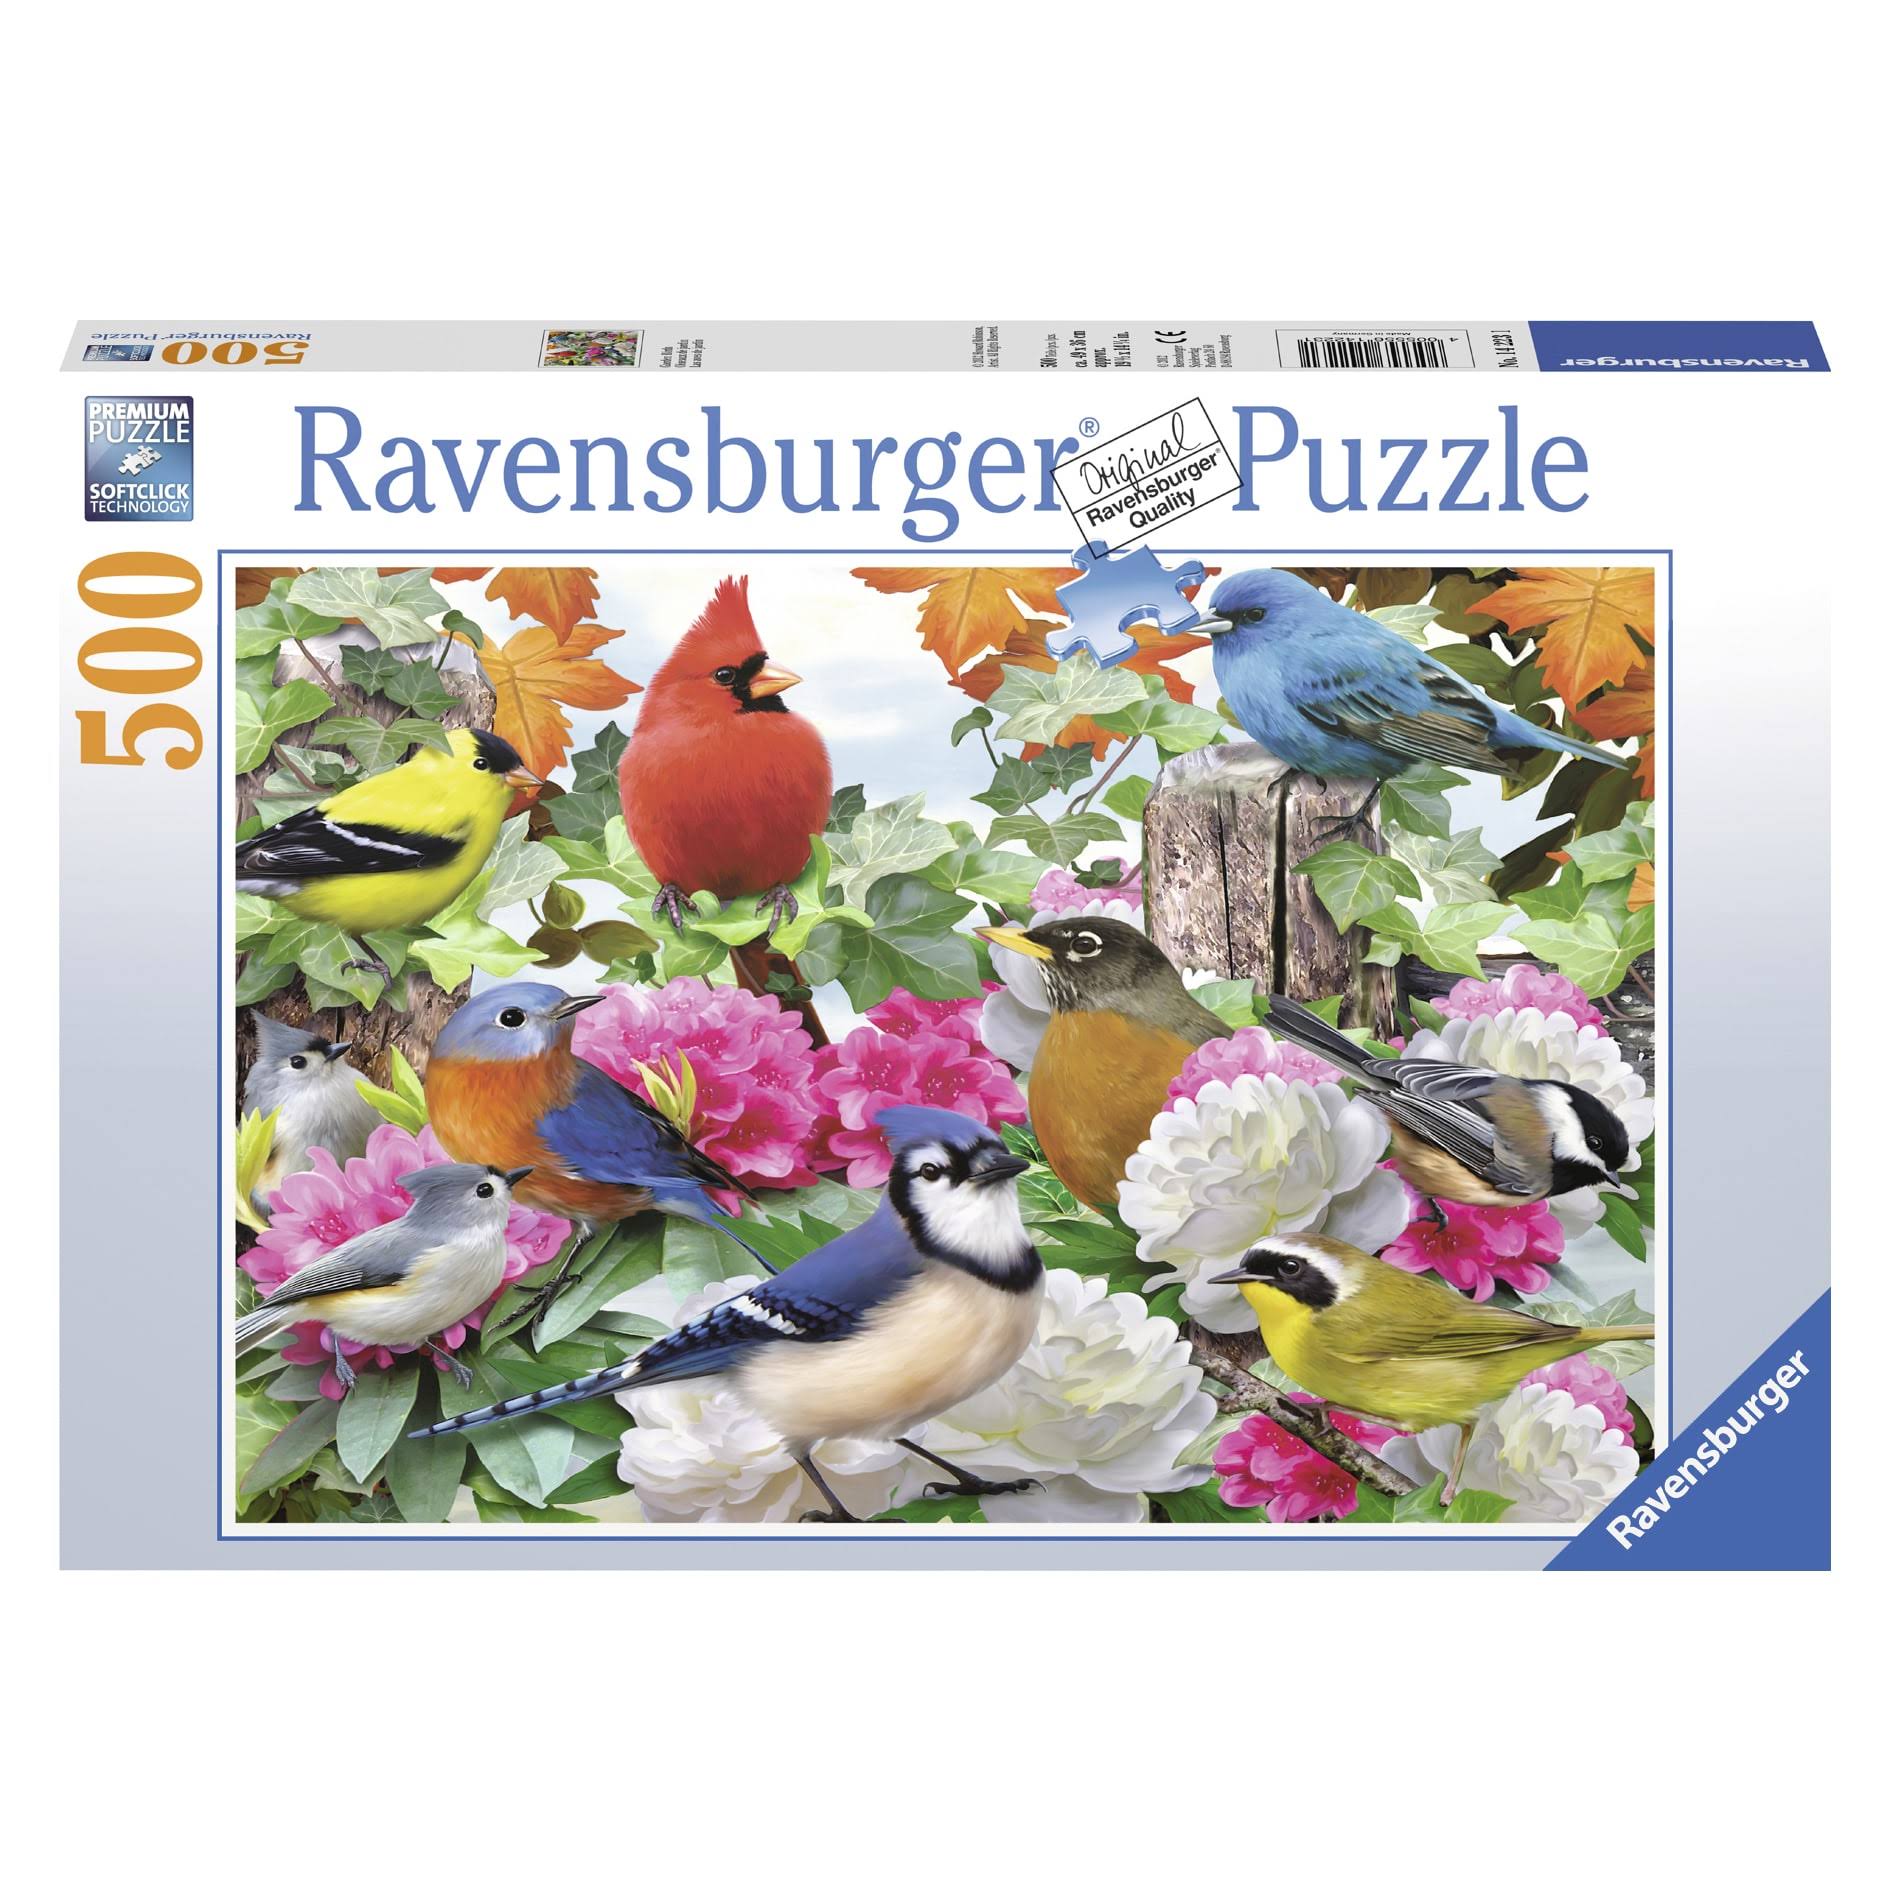 Ravensburger Garden Birds Jigsaw Puzzle - 500 Pieces